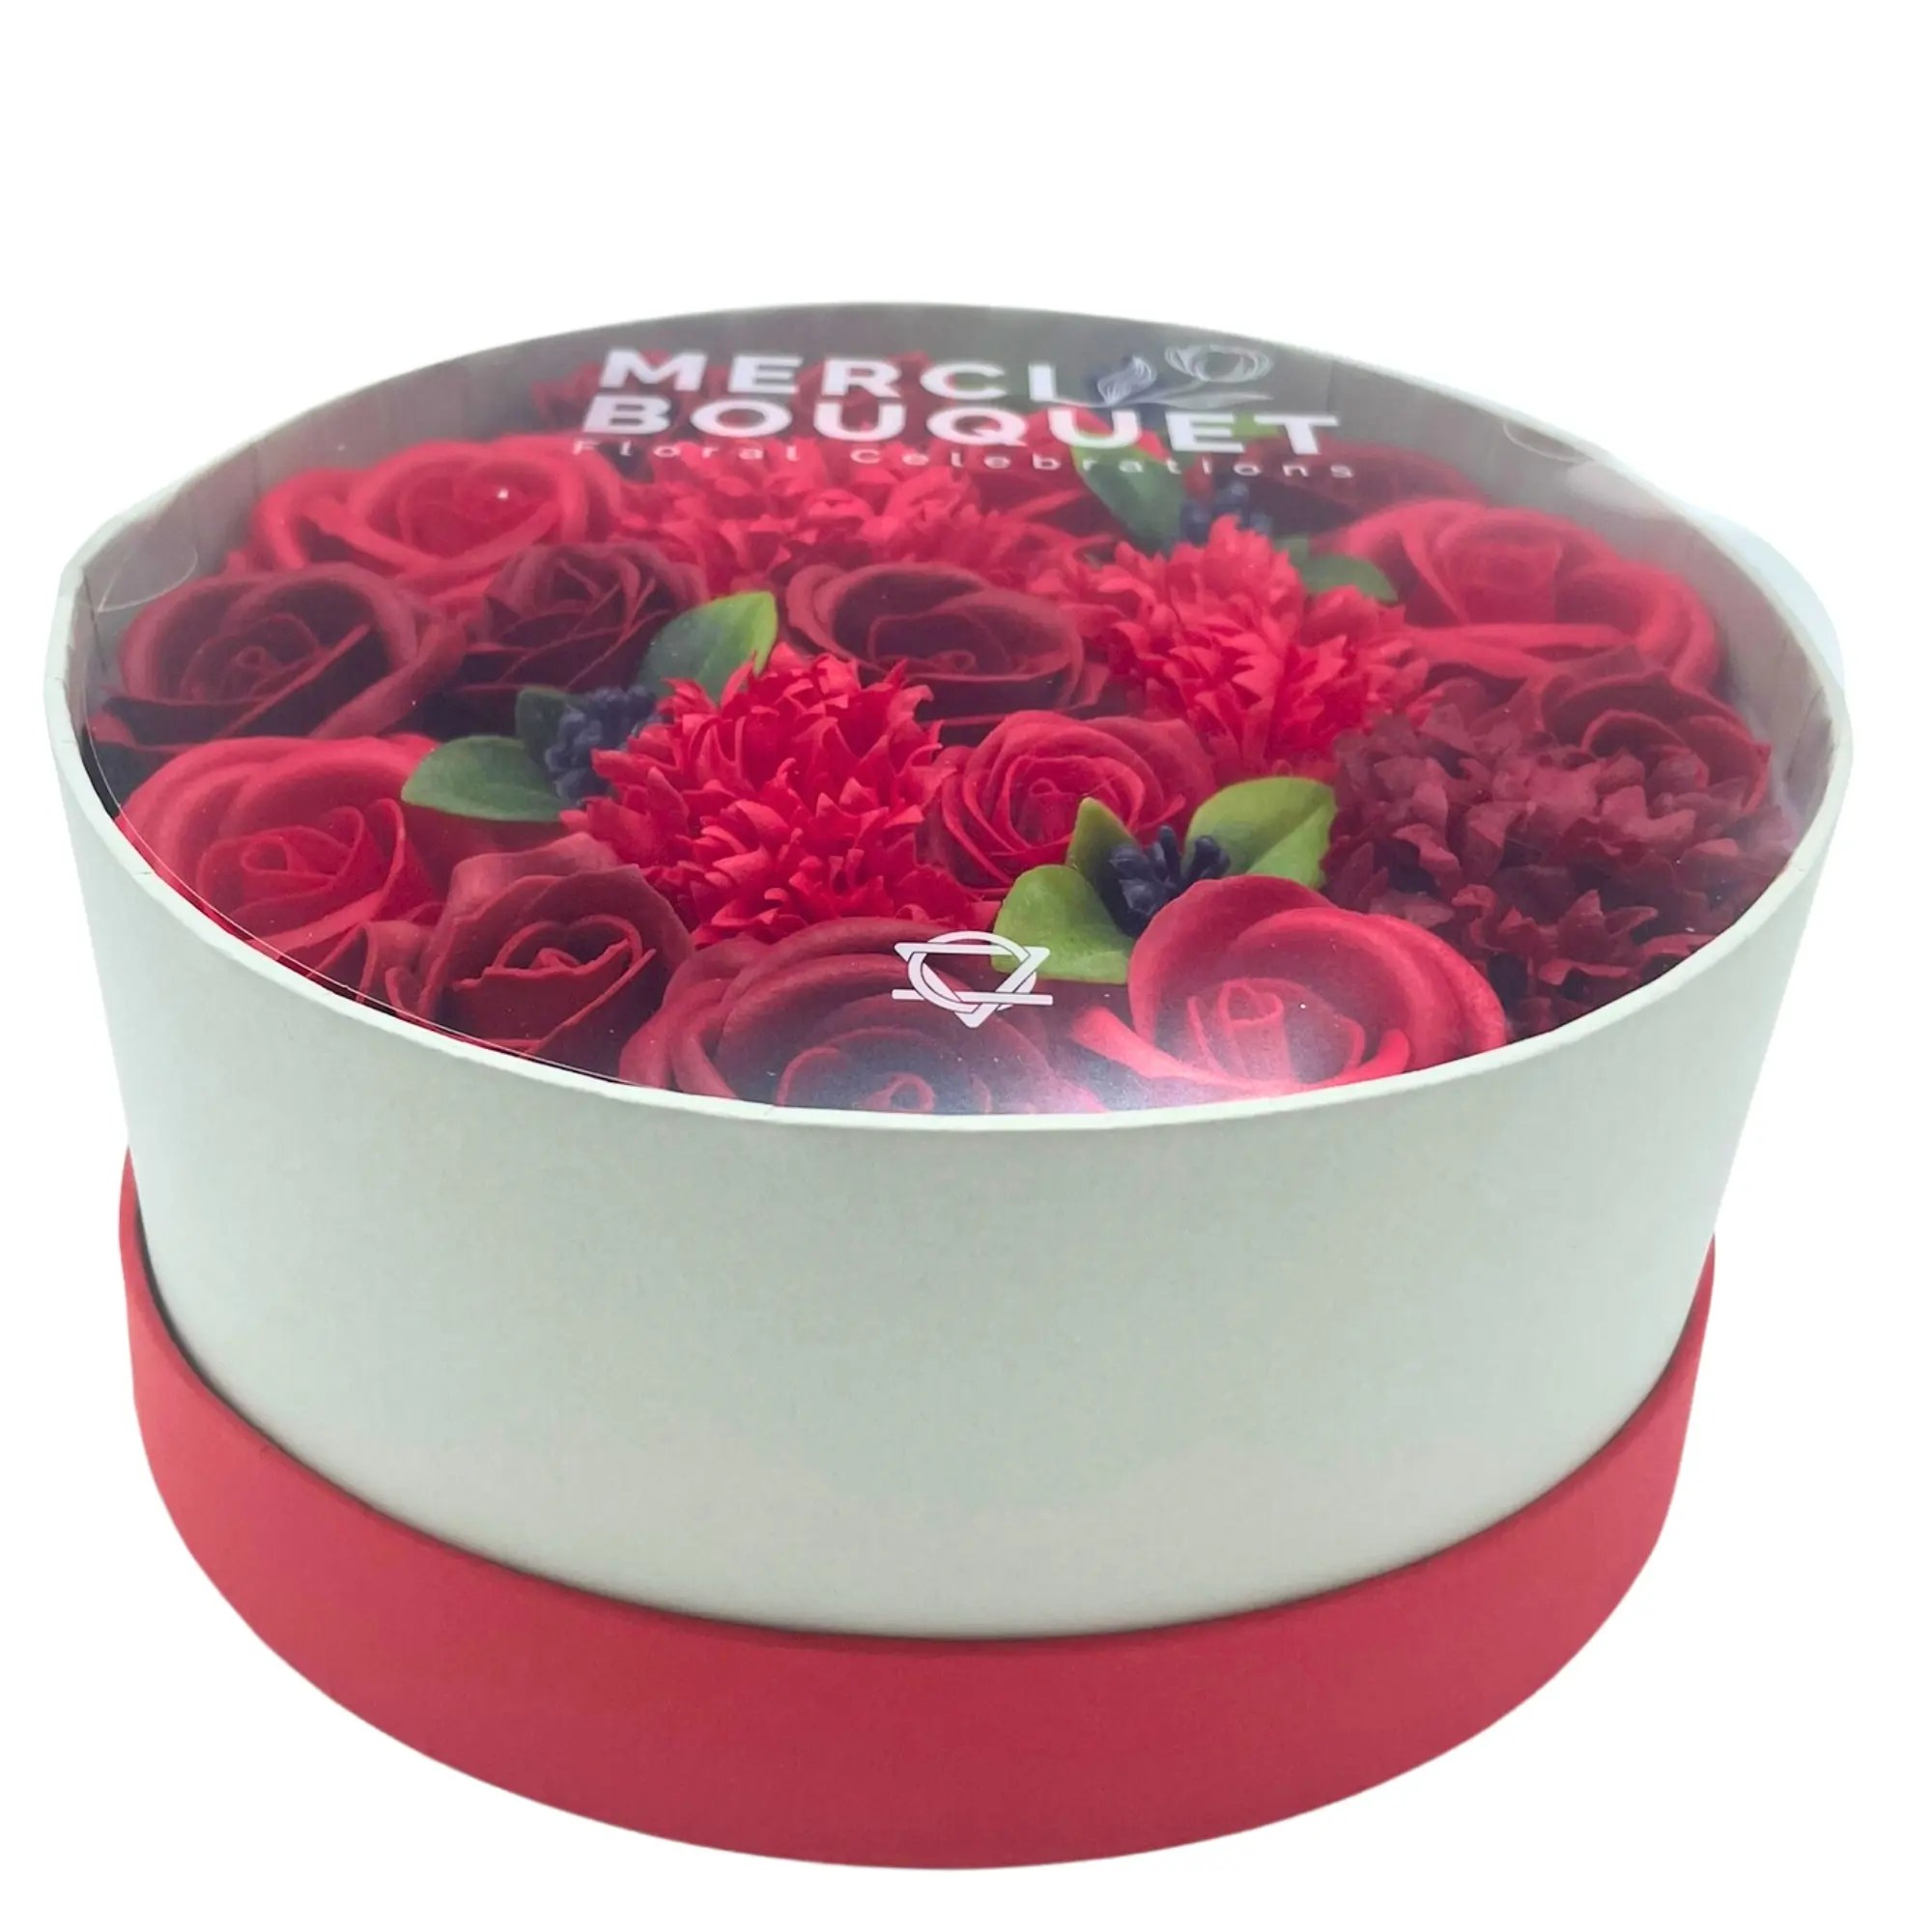 Caixa com flores redonda - Rosas vermelhas